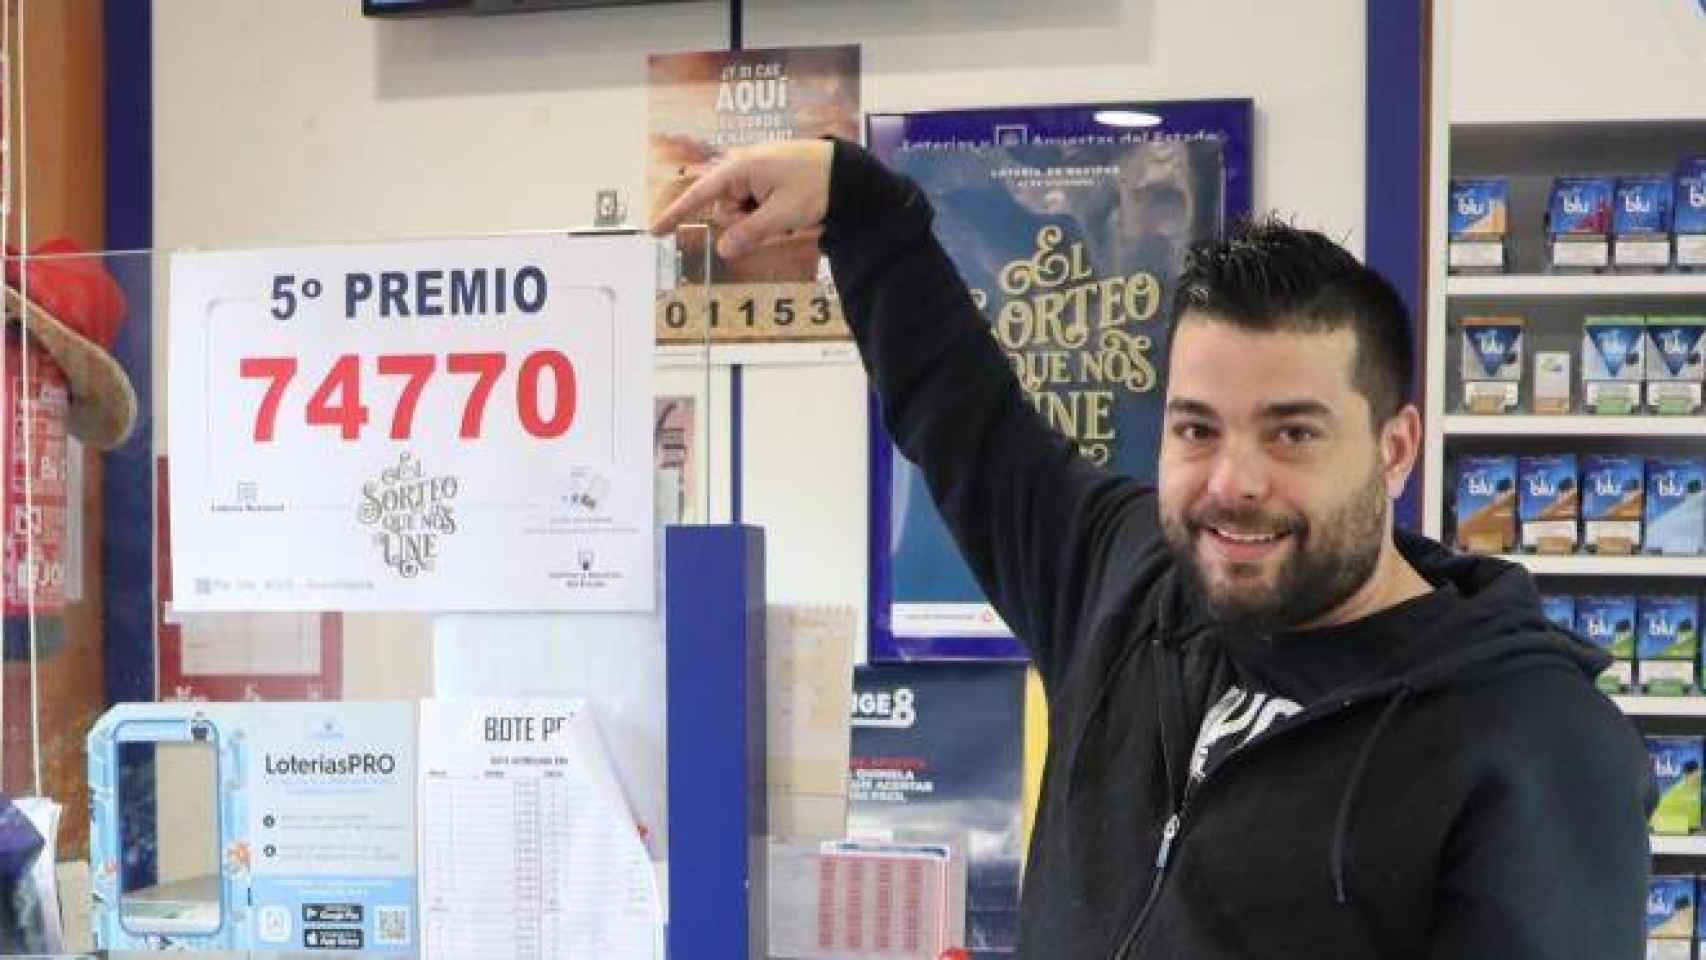 Solano Antelo de Guadalajara reparte dos décimos del 74.770, agraciado con un quinto premio